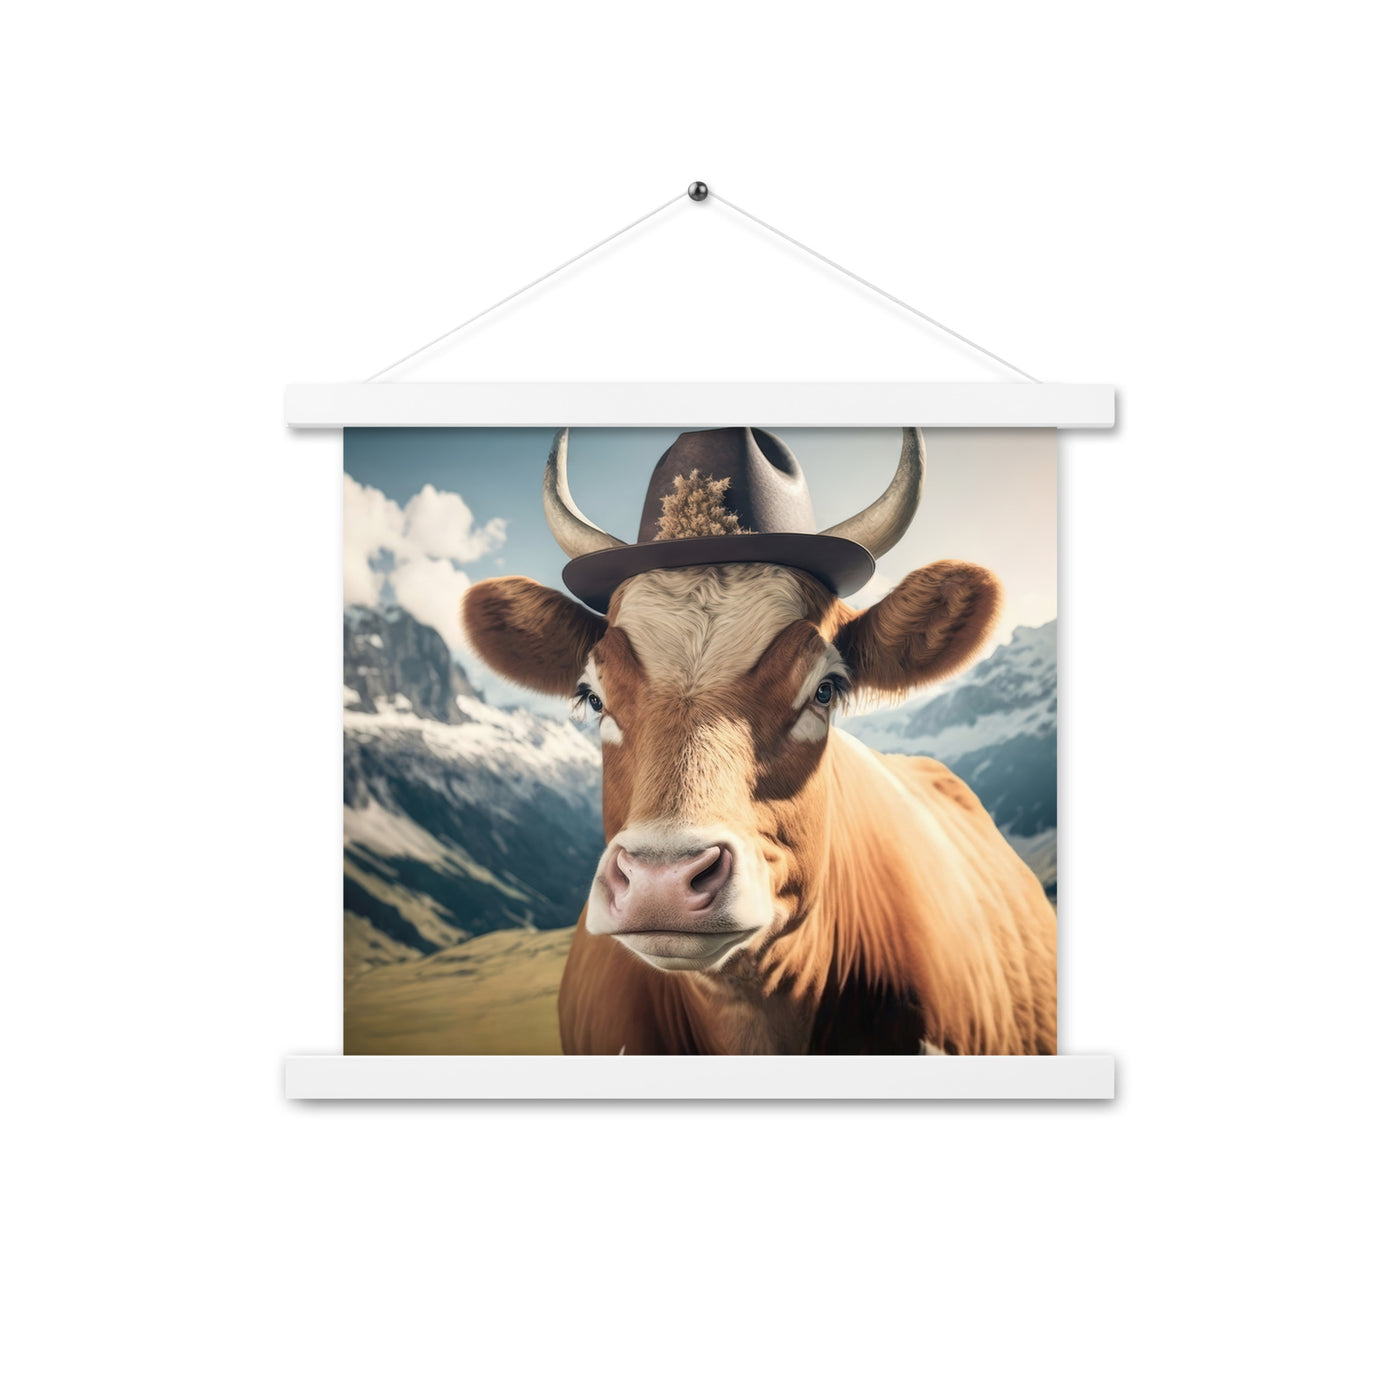 Kuh mit Hut in den Alpen - Berge im Hintergrund - Landschaftsmalerei - Premium Poster mit Aufhängung berge xxx Weiß 35.6 x 35.6 cm